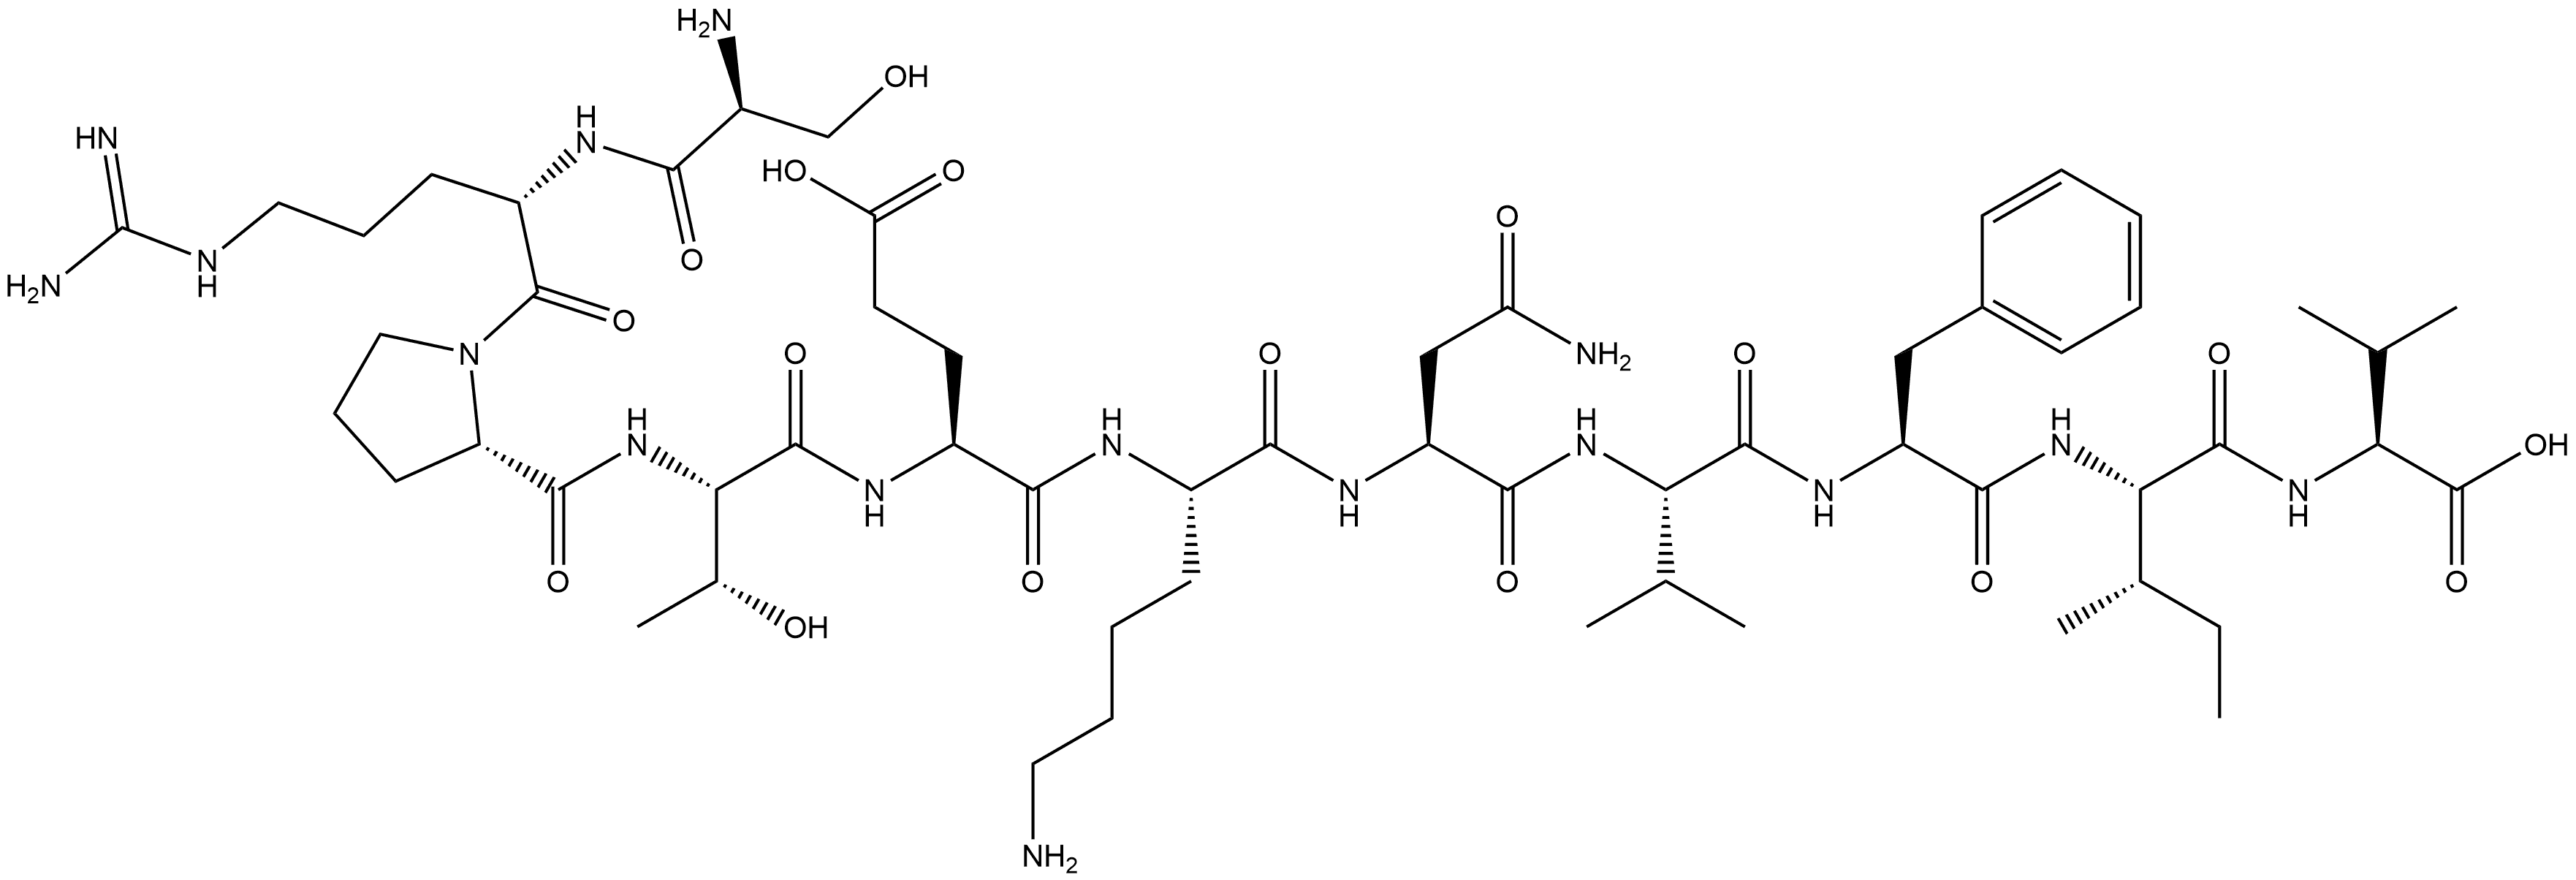 L-Valine, L-seryl-L-arginyl-L-prolyl-L-threonyl-L-α-glutamyl-L-lysyl-L-asparaginyl-L-valyl-L-phenylalanyl-L-isoleucyl-|结构域多肽CONNEXIN MIMETIC PEPTIDE 40GAP27